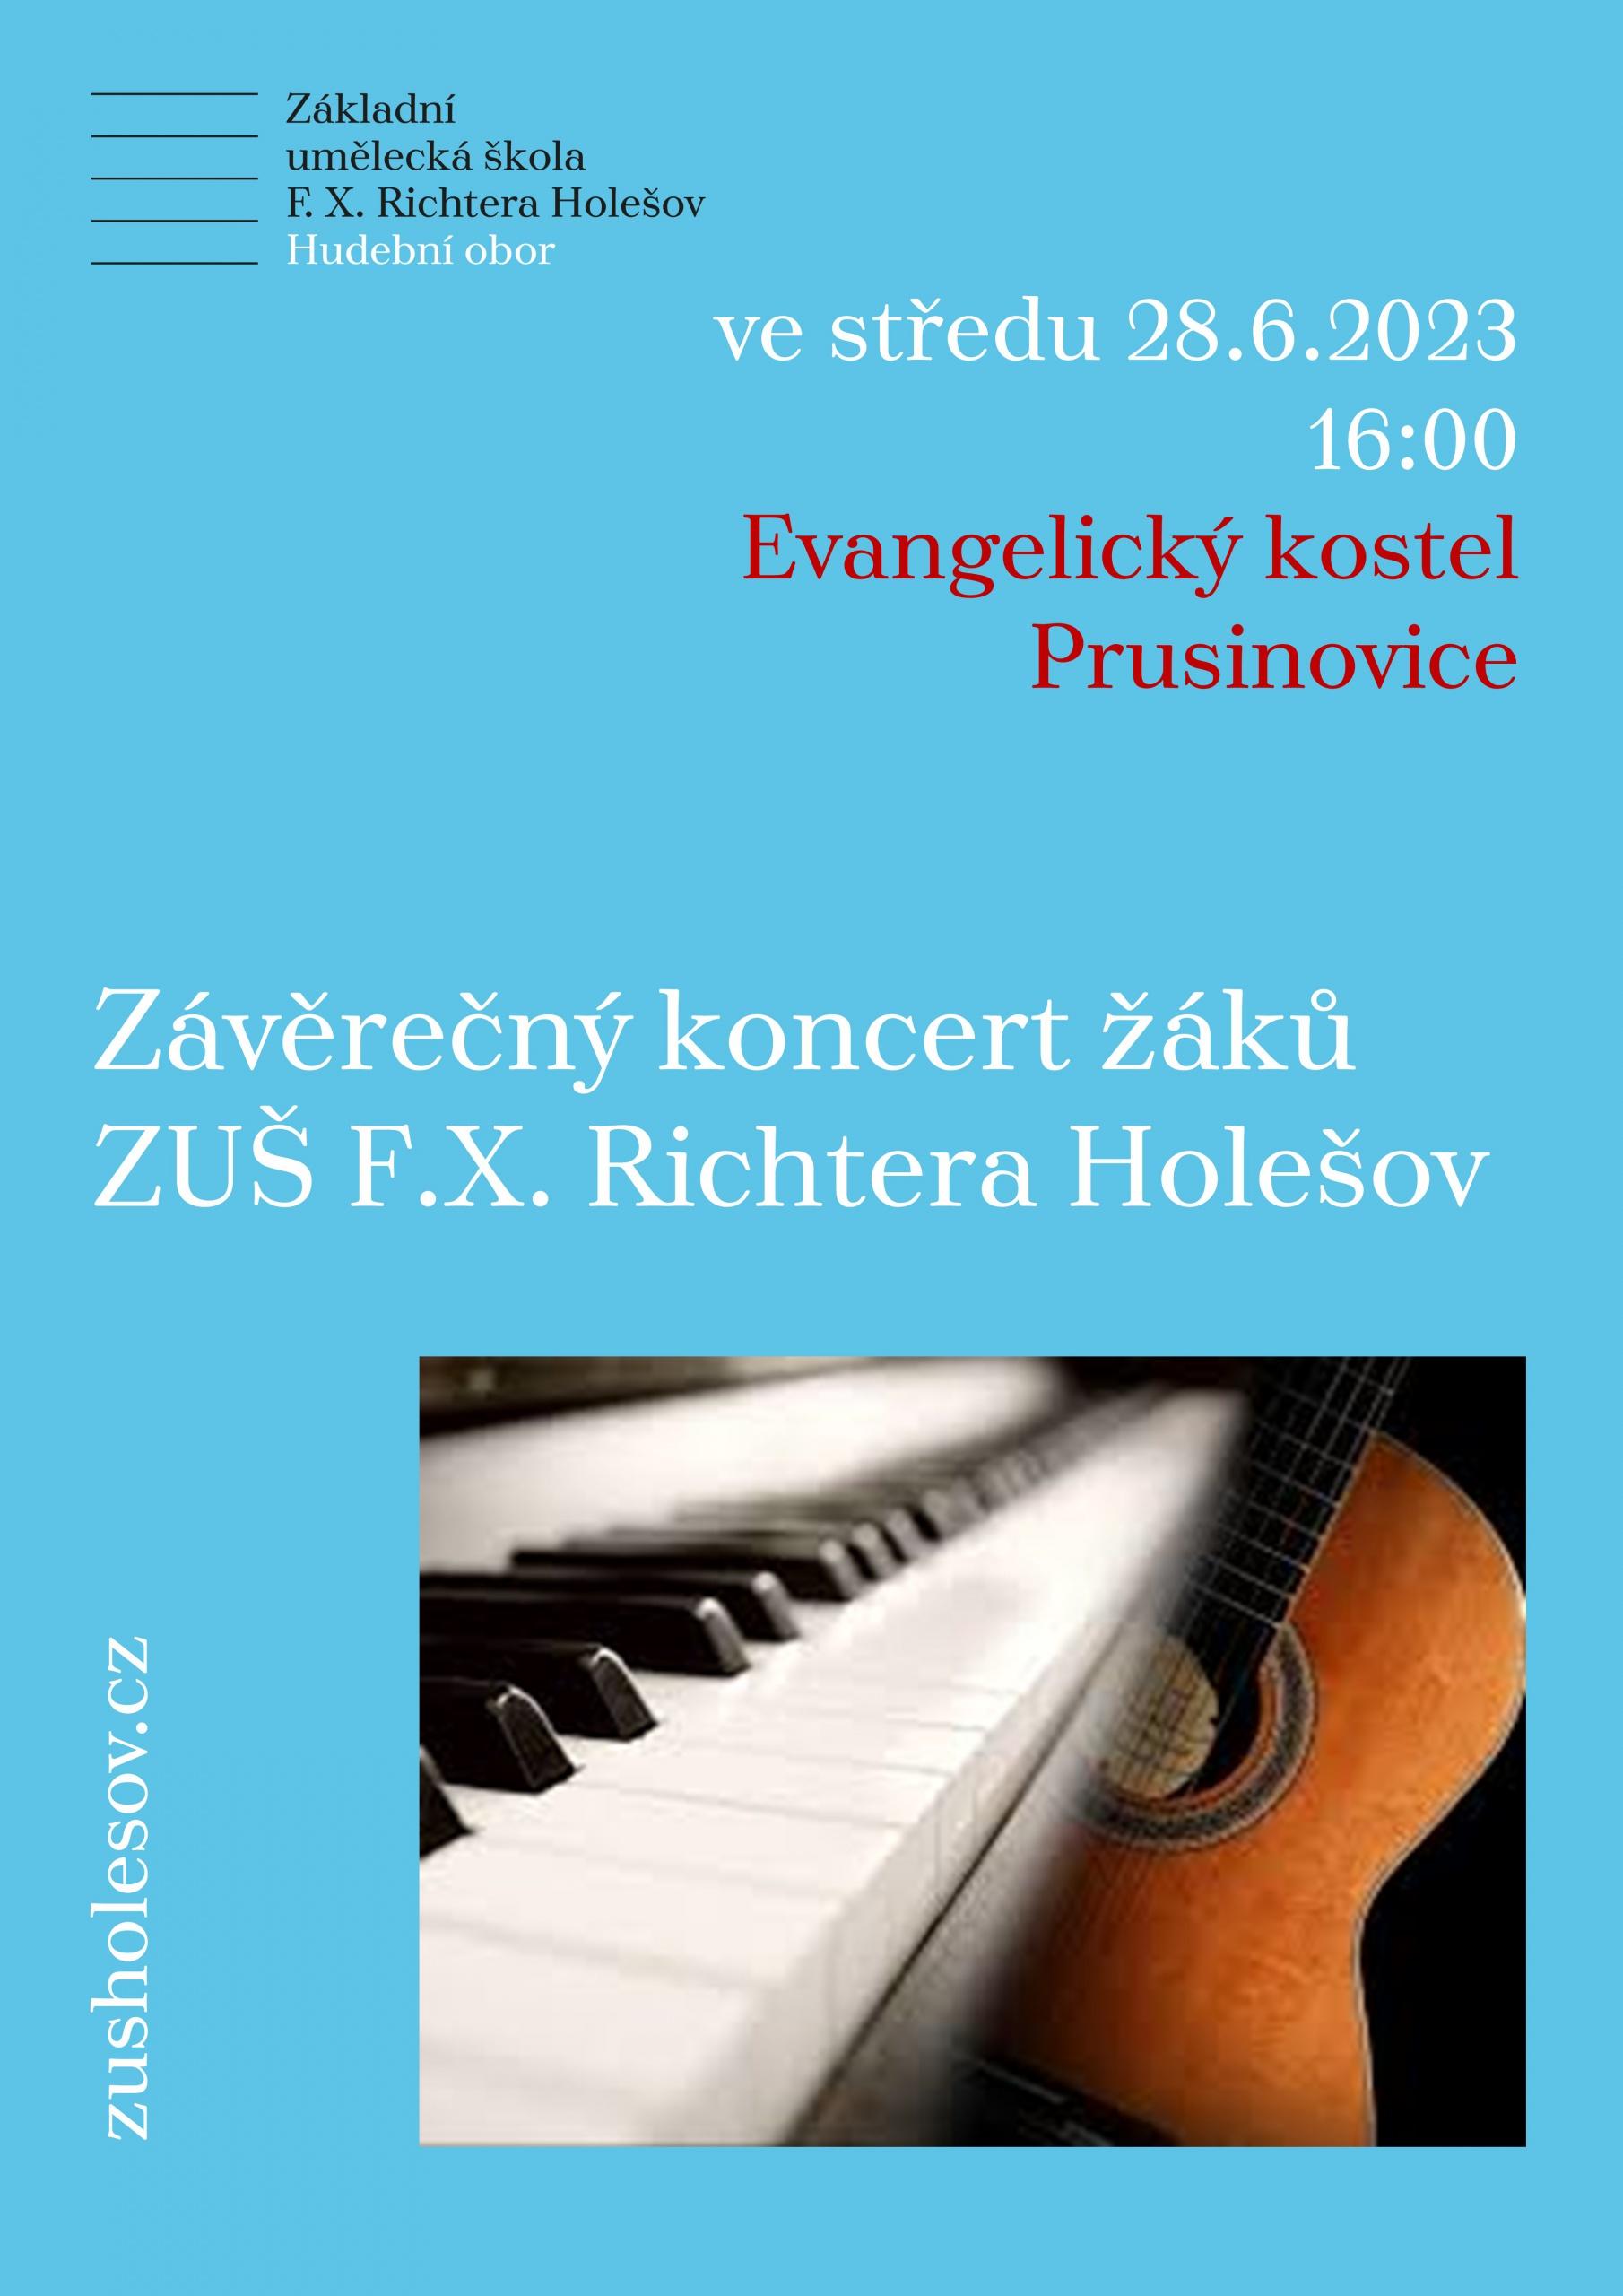 Závěrečný koncert žáků pobočky v Prusinovicích